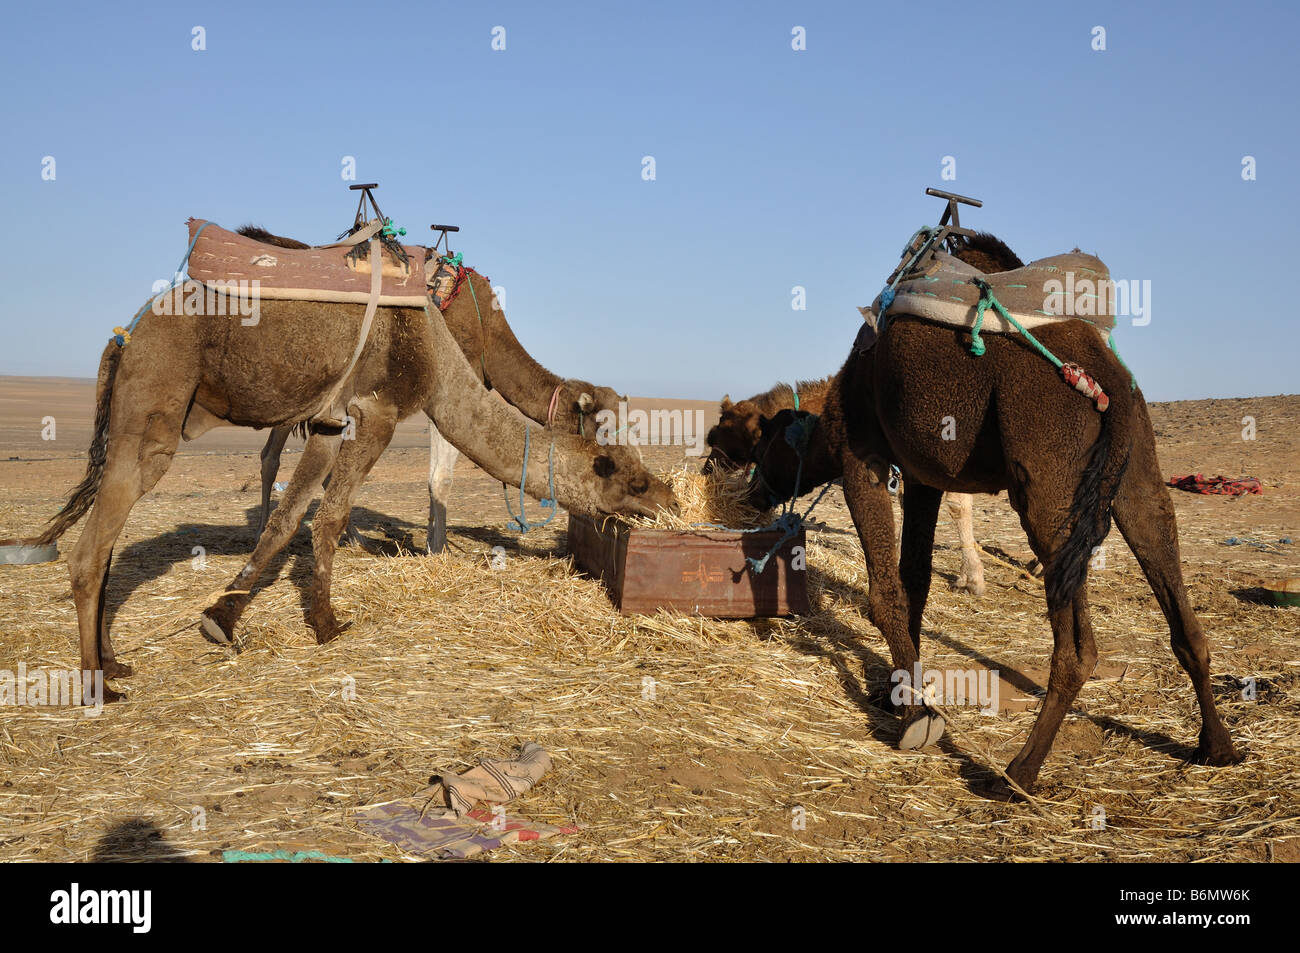 Les chameaux se nourrissent dans l'oasis, désert du Sahara Maroc Sud Banque D'Images